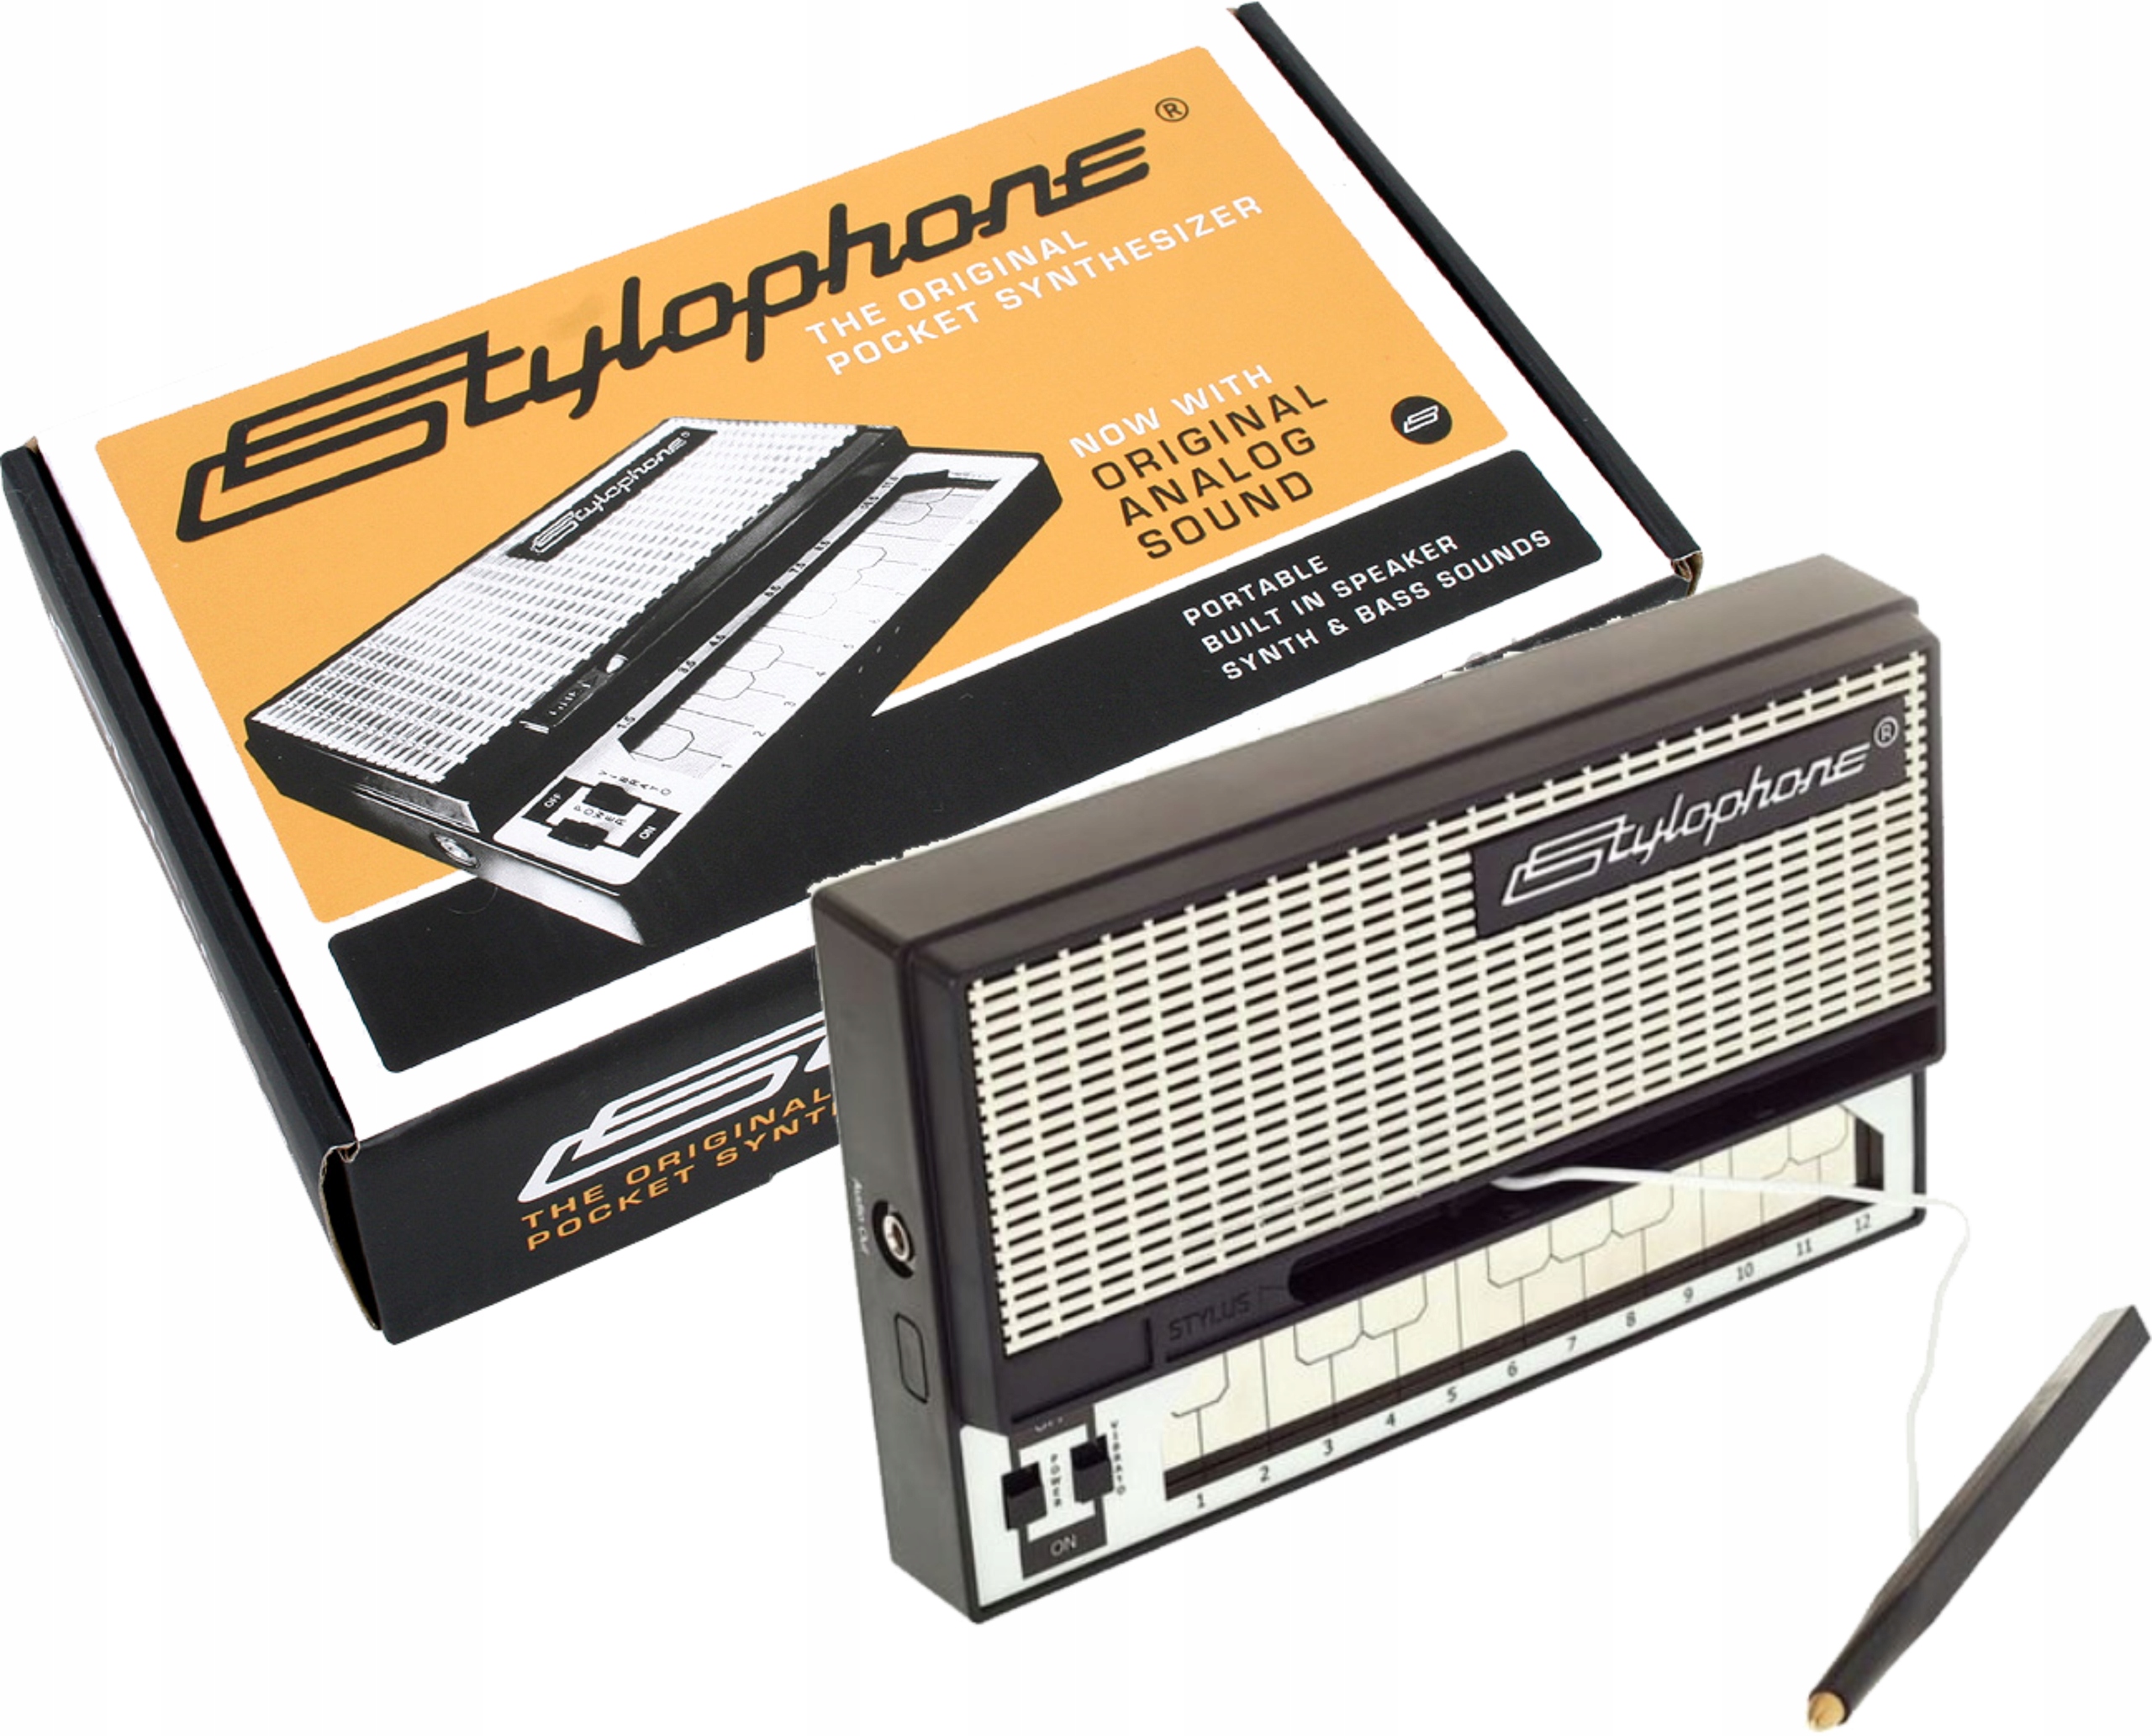 Стилофон цена. Карманный синтезатор. Стилофон. Mini Stylophone. Стилофон купить.